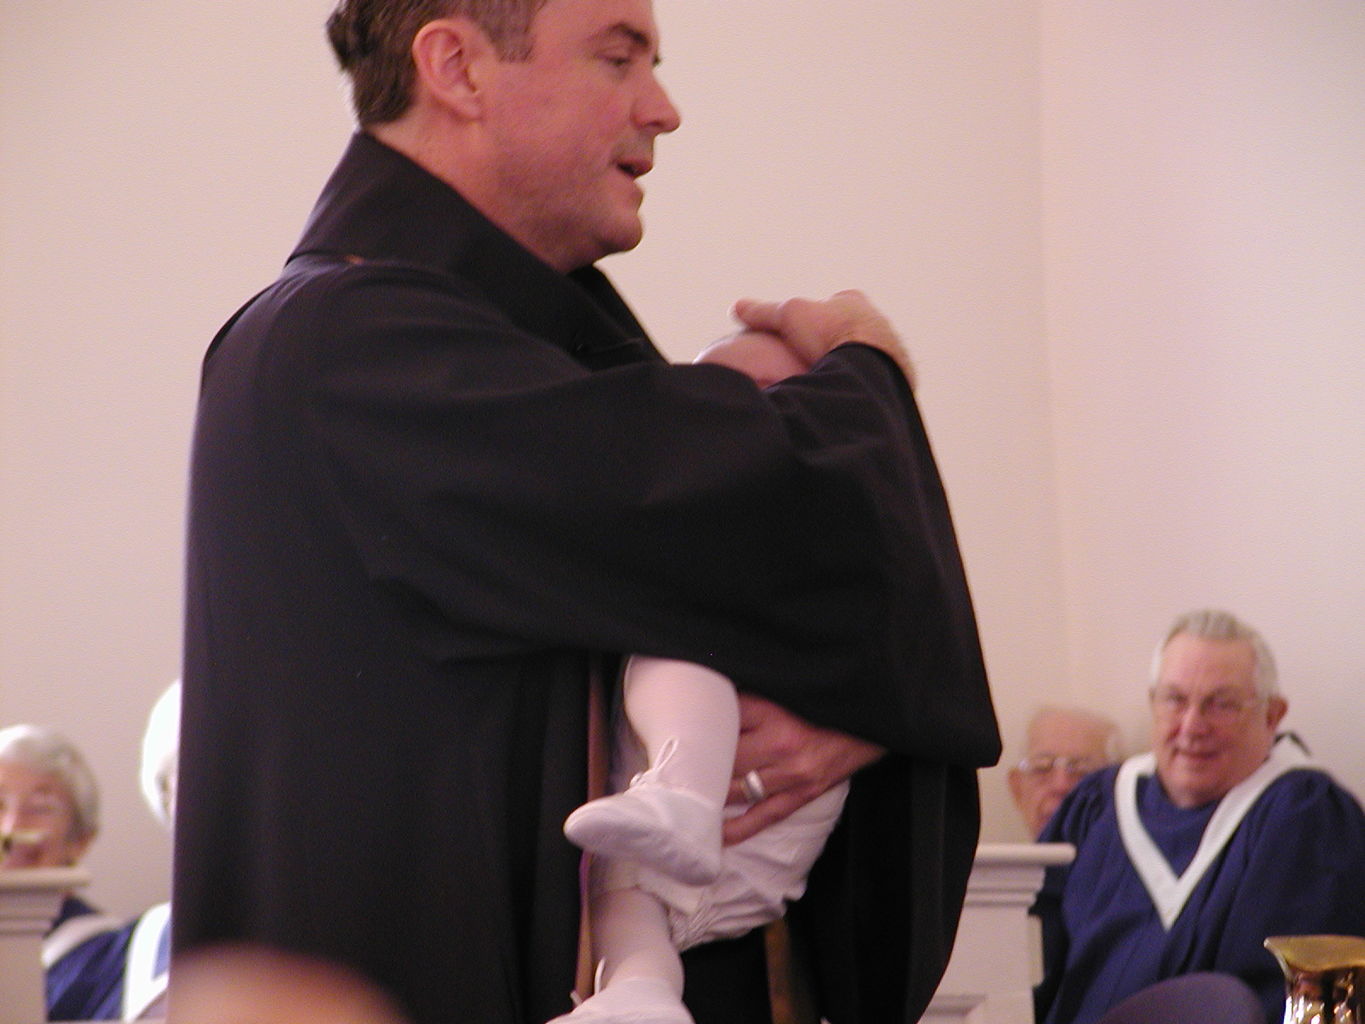 James' Baptism
